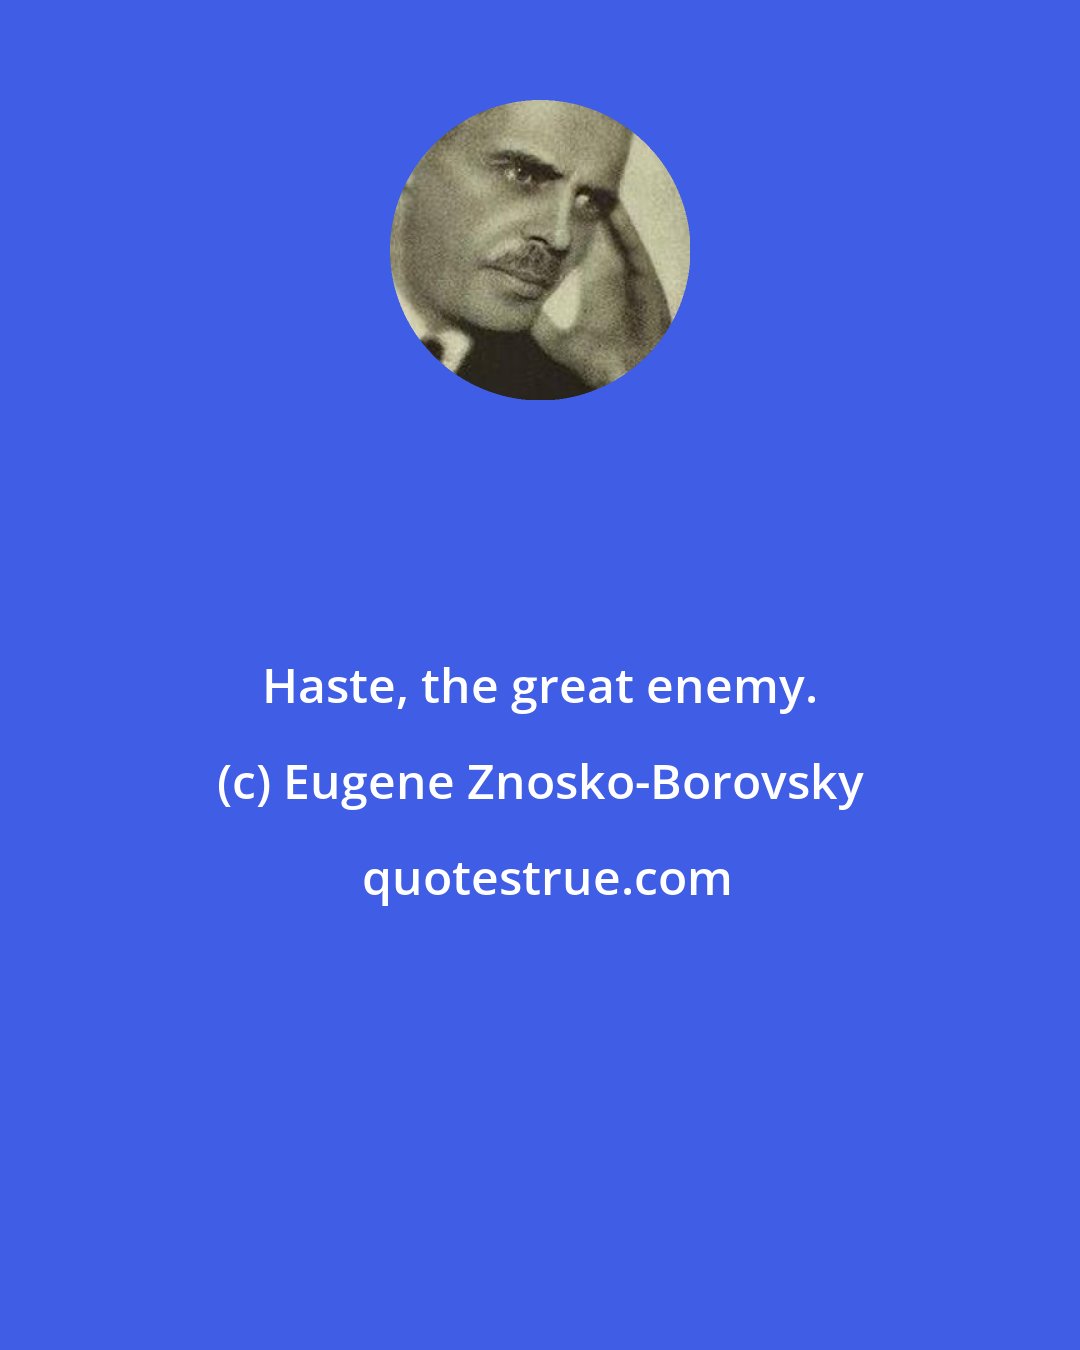 Eugene Znosko-Borovsky: Haste, the great enemy.